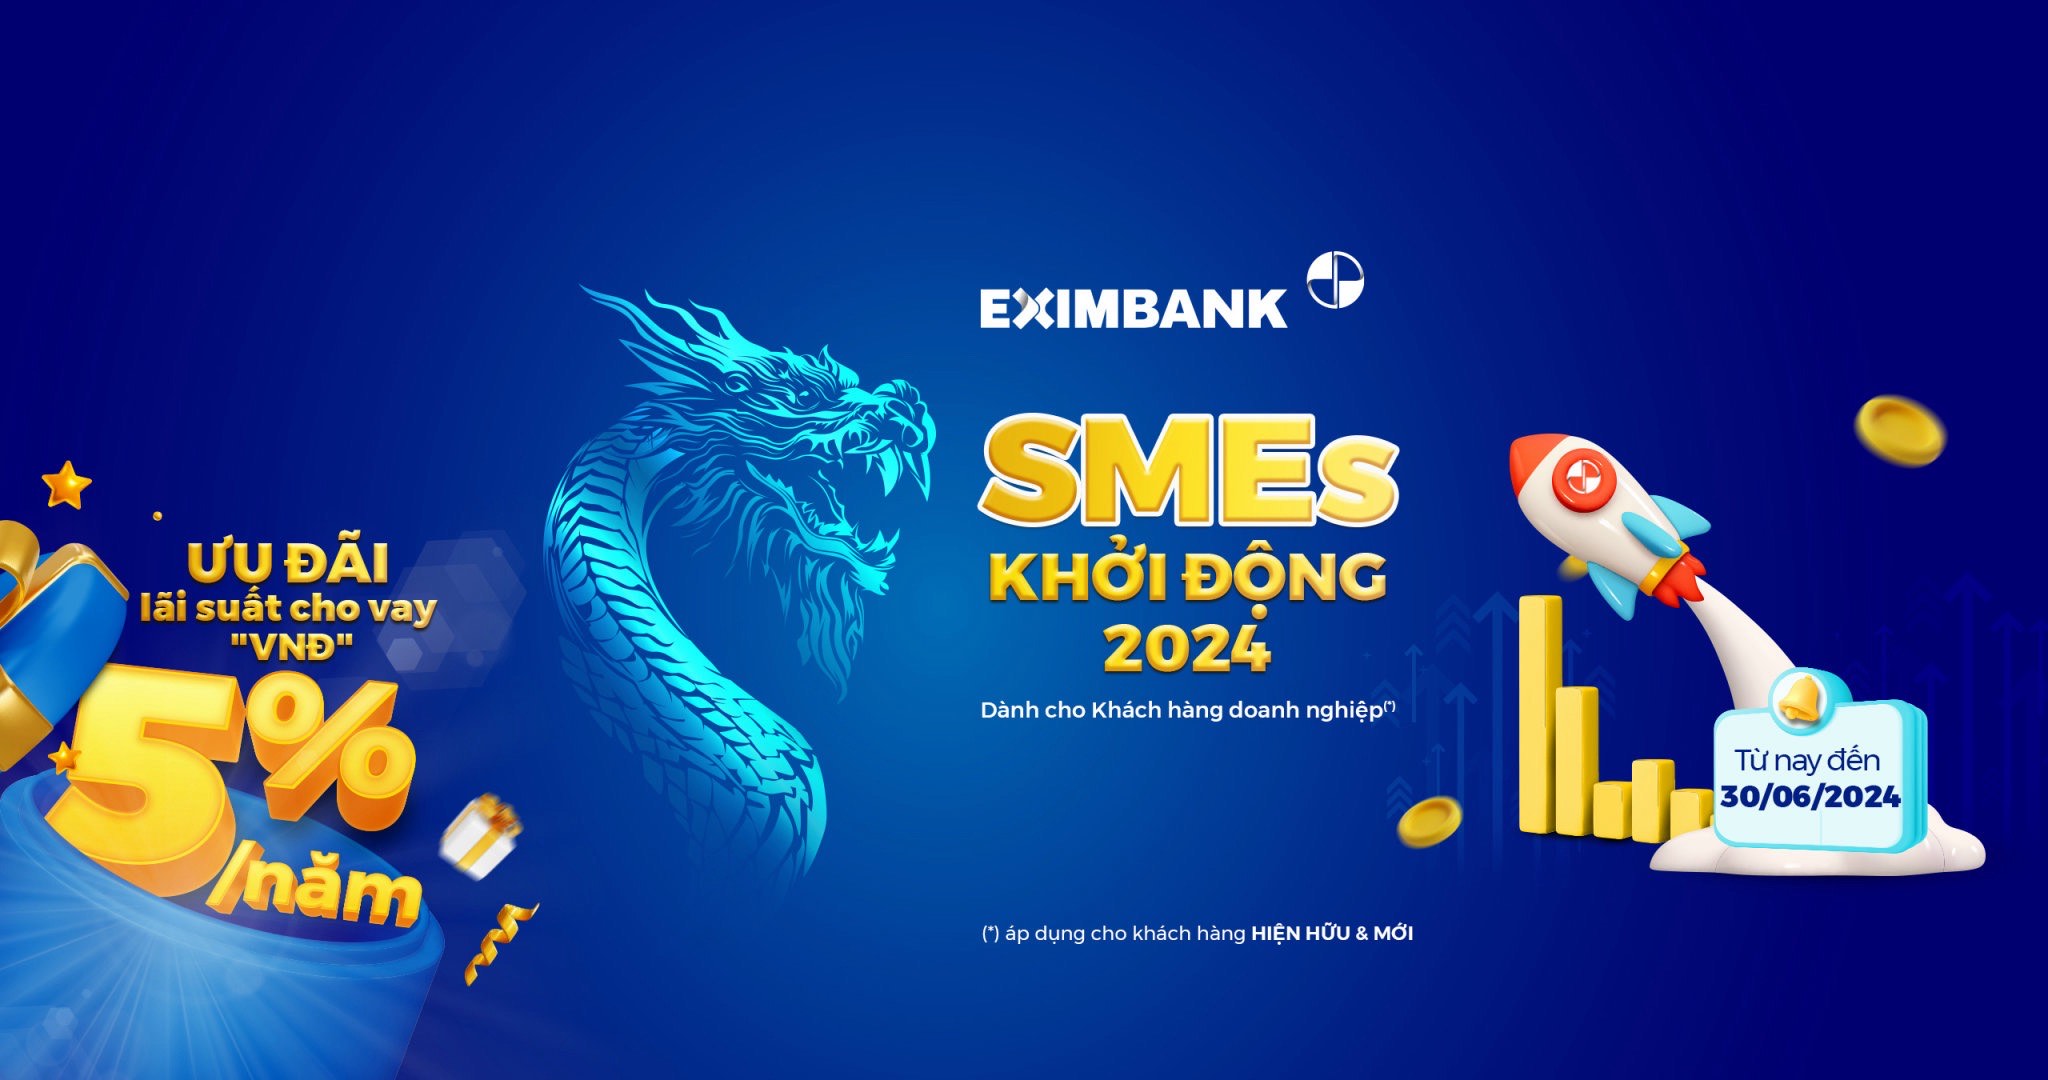 Eximbank tung chương trình cho vay ưu đãi “SMEs – Khởi động 2024” - Ảnh 1.